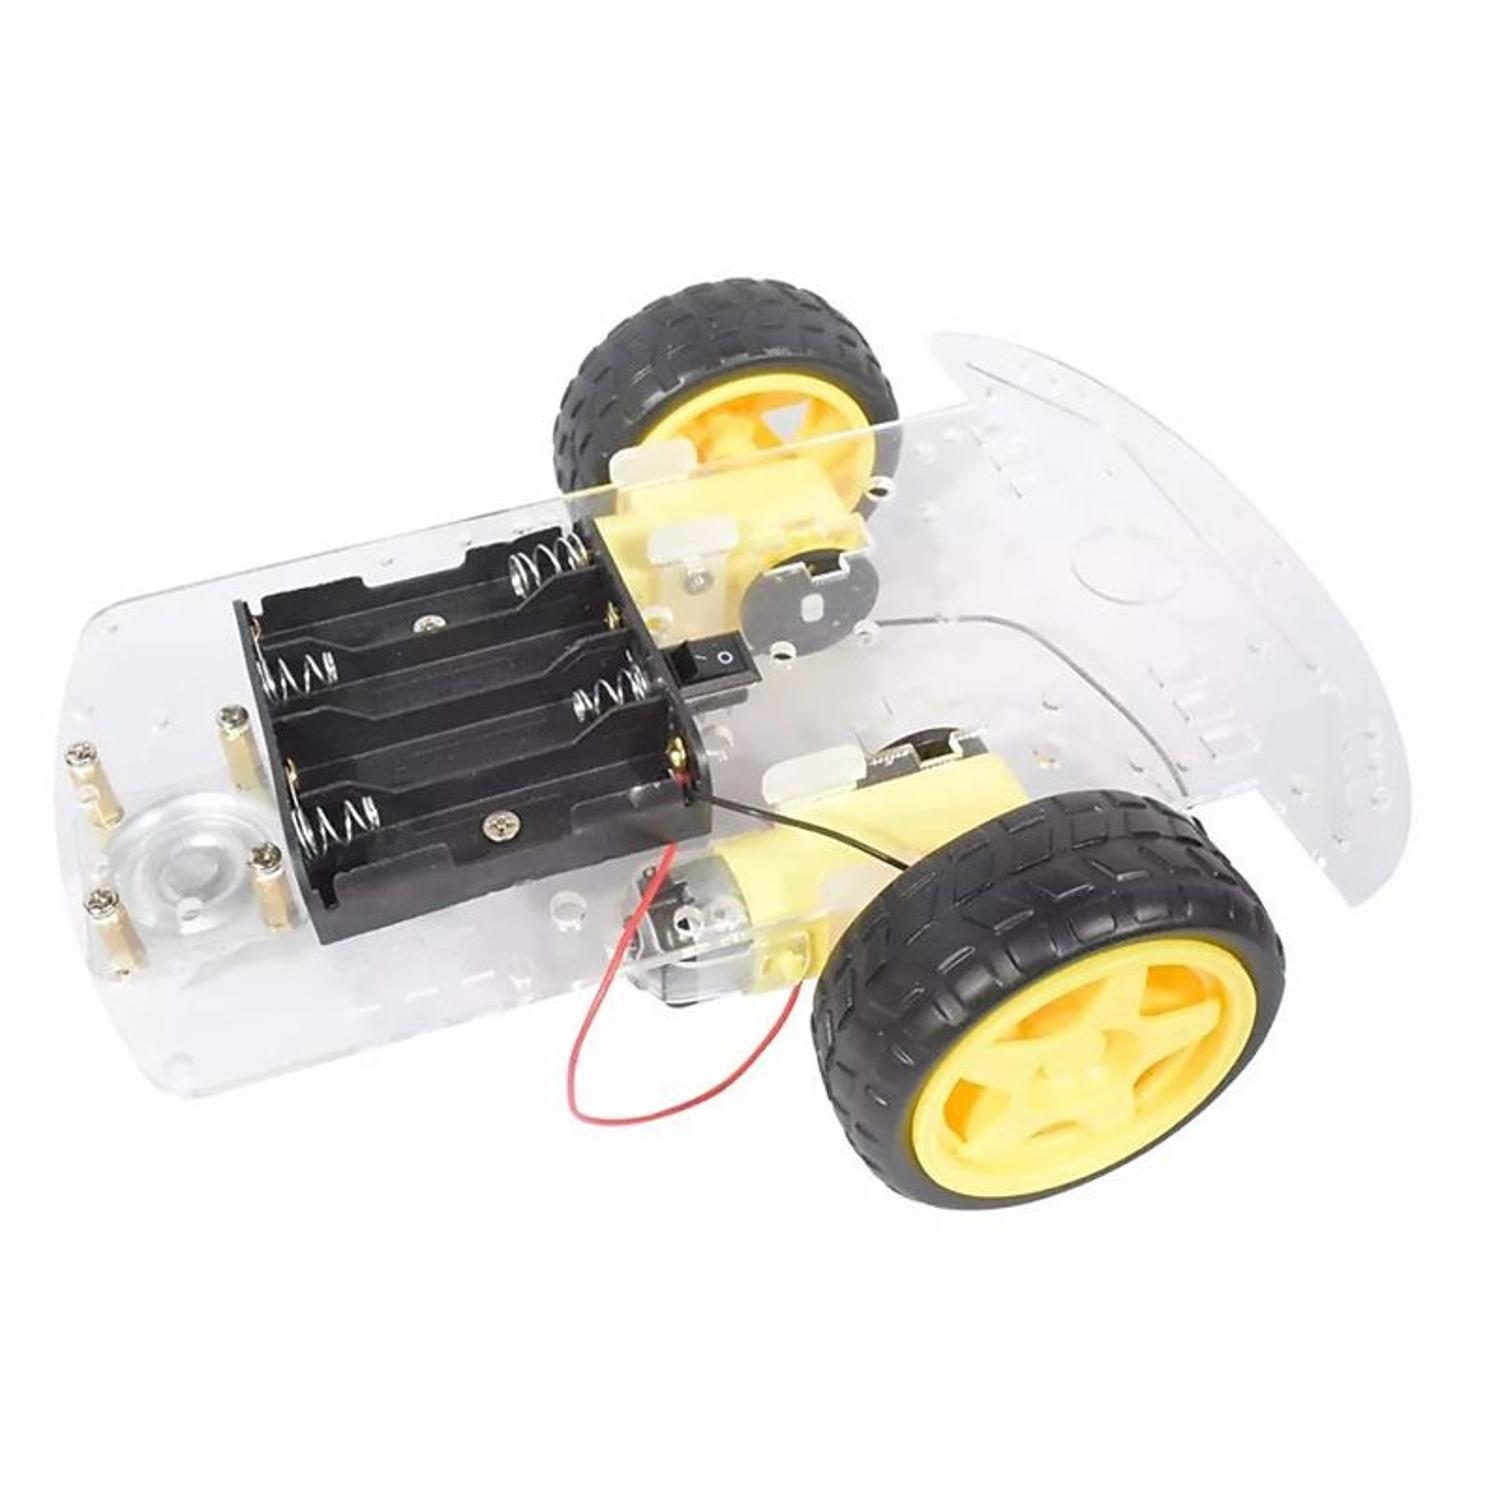 Kit Carro Robot Seguidor de Linea Chasis Acrilico